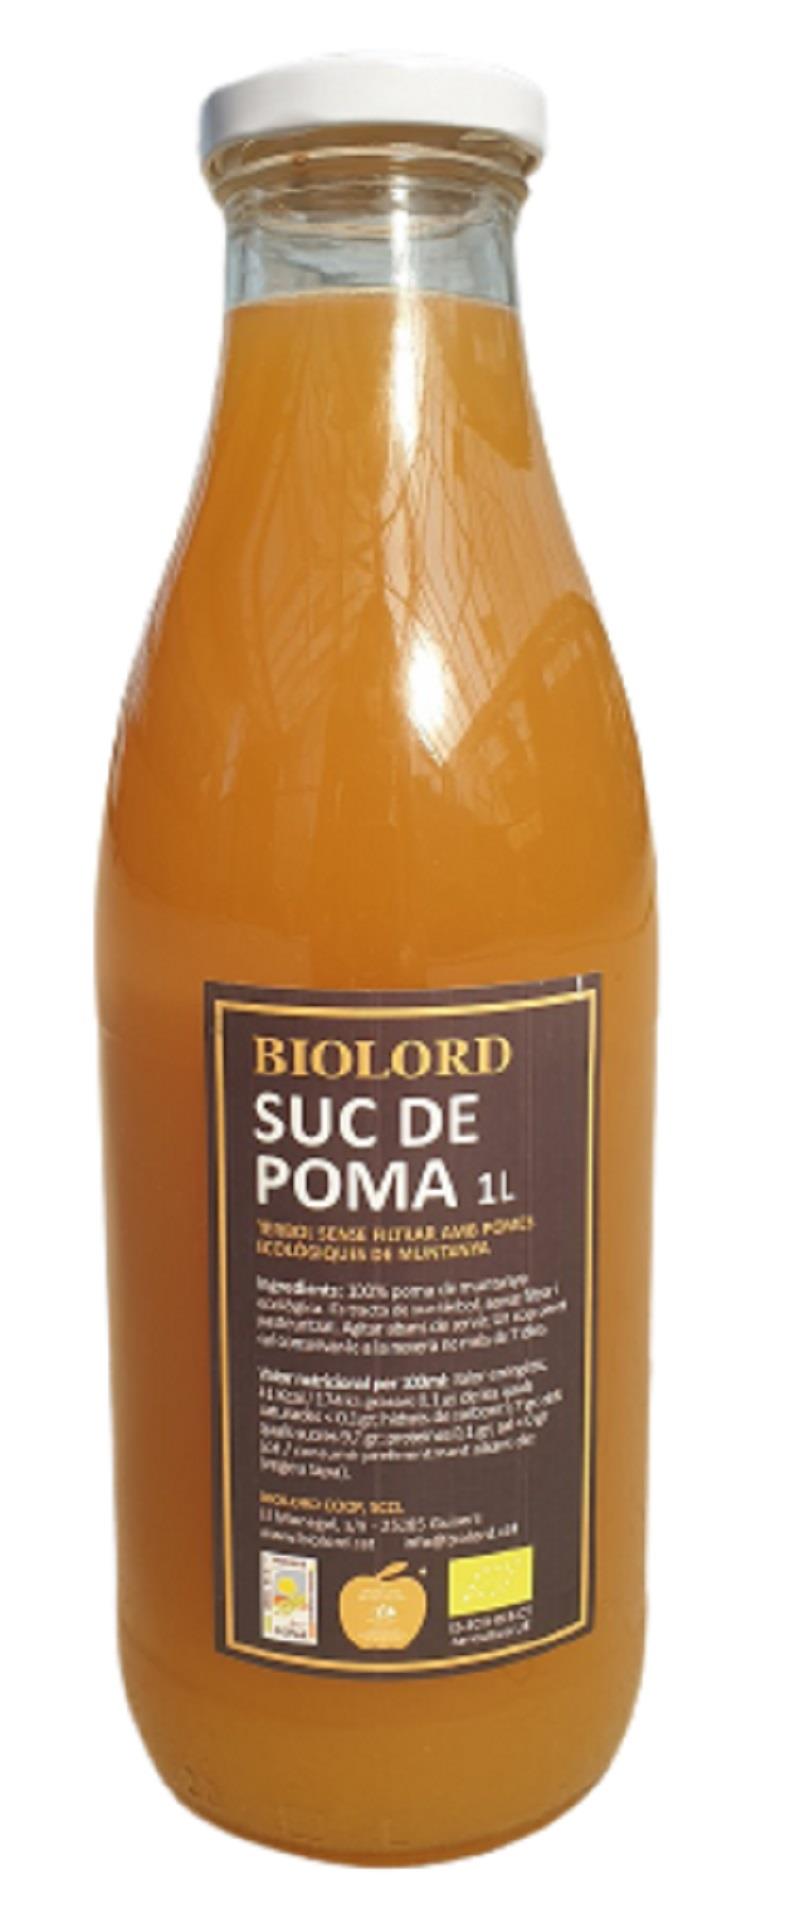 SUC DE POMA BIOLORD 1L | 663 | ORIGEN: SOLSONES